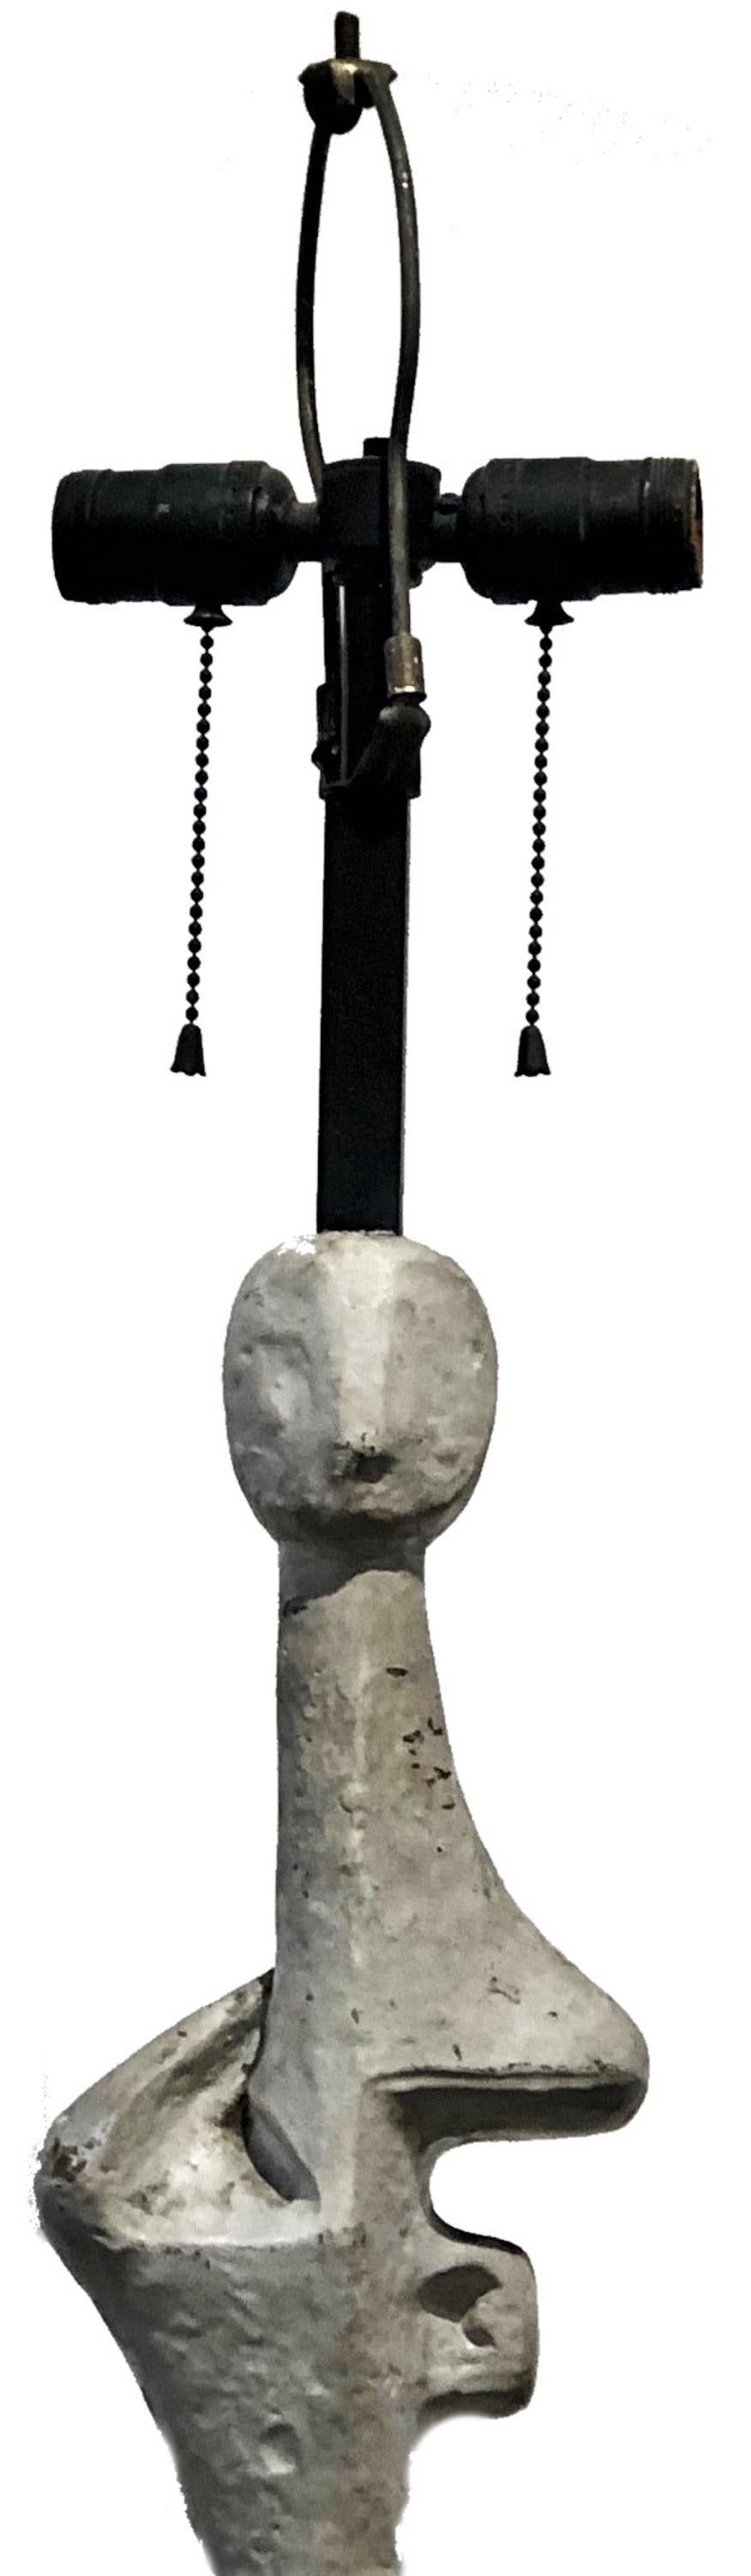 Modernismus 
Stehlampe 
In Anlehnung an Alberto Giacometti 
Zusammensetzung & Metall
Ende des XX. Jahrhunderts

ÜBER
Heute, im Zeitalter des Eklektizismus, ist diese außergewöhnliche modernistische Stehleuchte im Stil des Maestros Giacometti in der